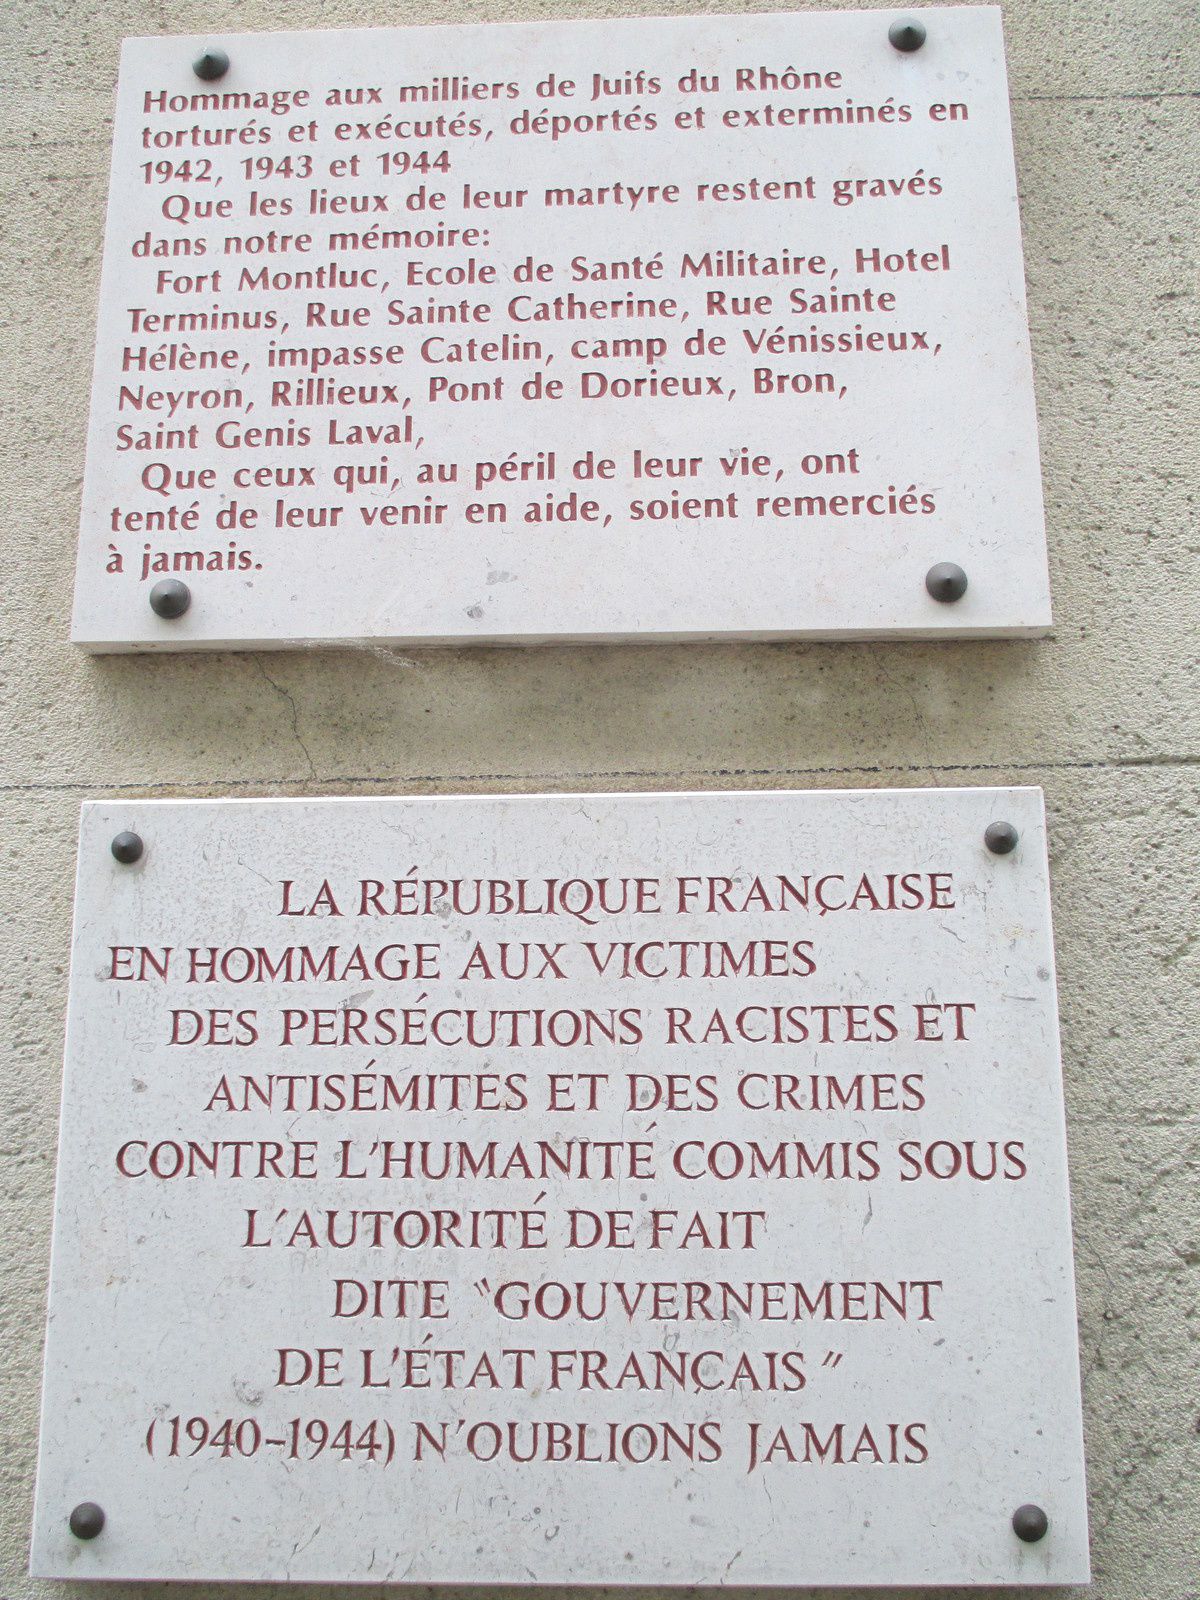 Des plaques souvenirs pour que les visiteurs qui viennent visiter ce haut lieu de la Résistance et de la Déportation se souviennent 